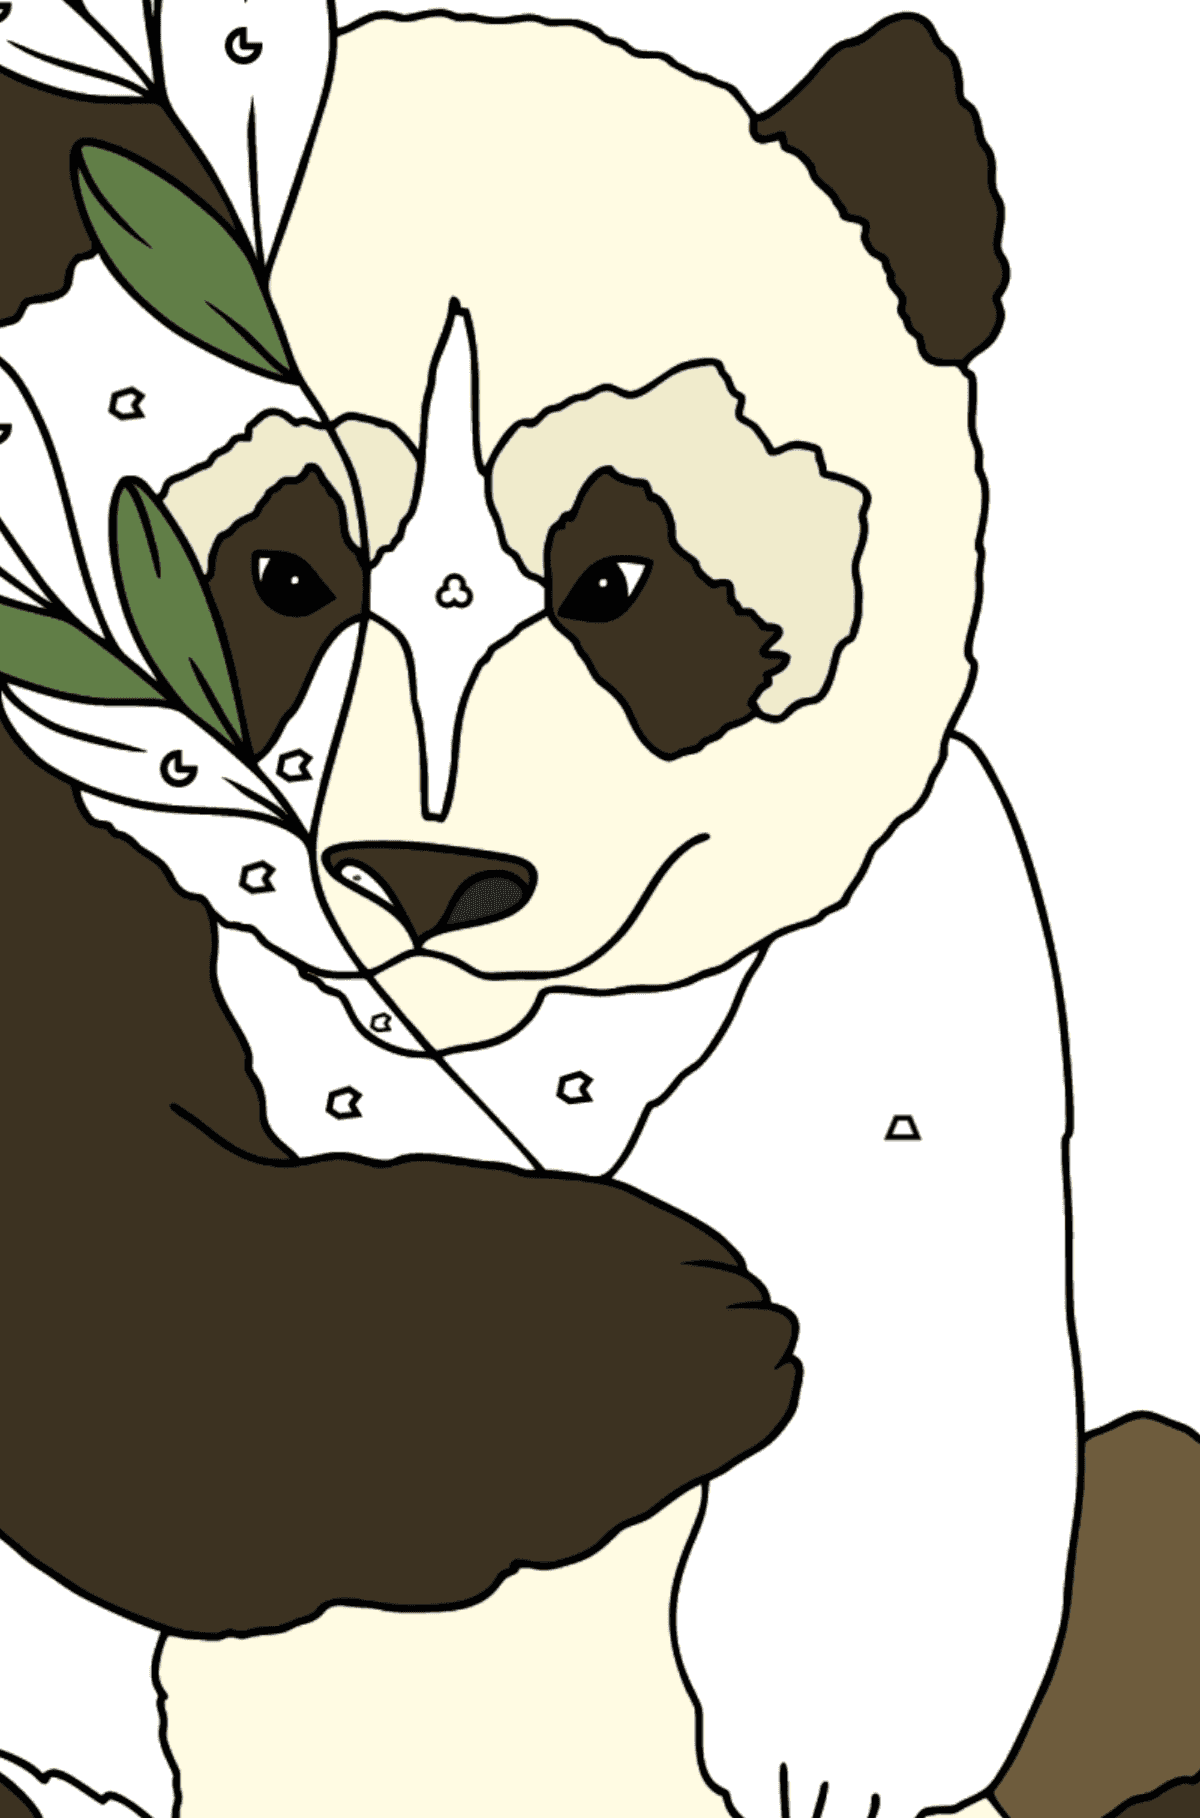 Dibujo para Colorear - Un Panda está Tomando un Descanso - Colorear por Formas Geométricas para Niños